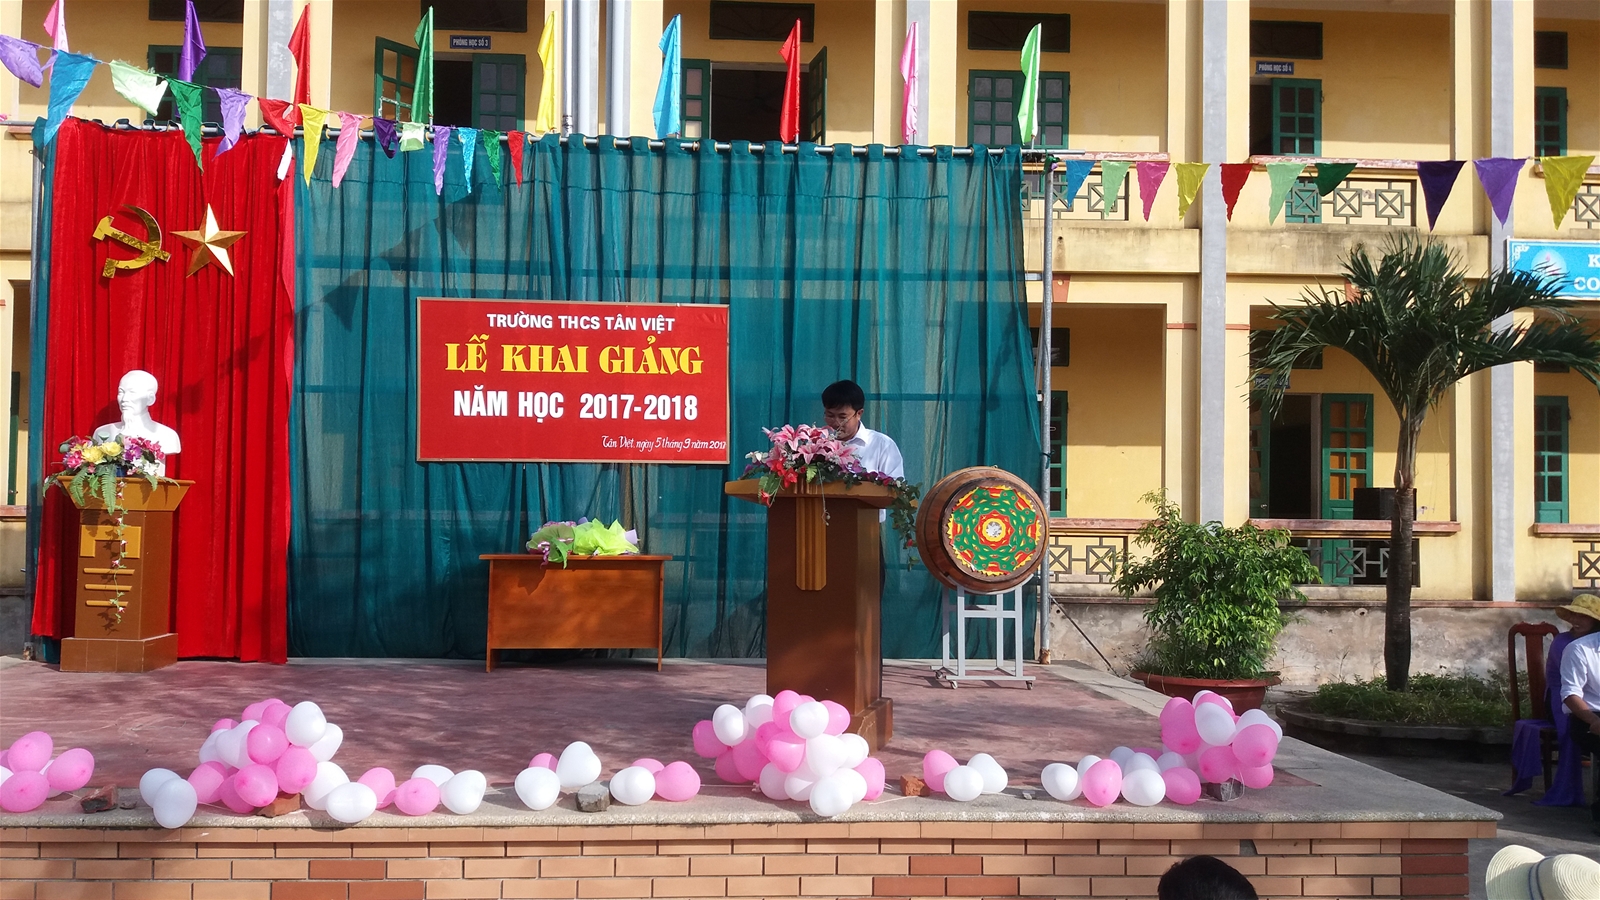 Thày Vũ Đình Quang - HT nhà trường đọc diễn văn khai giảng